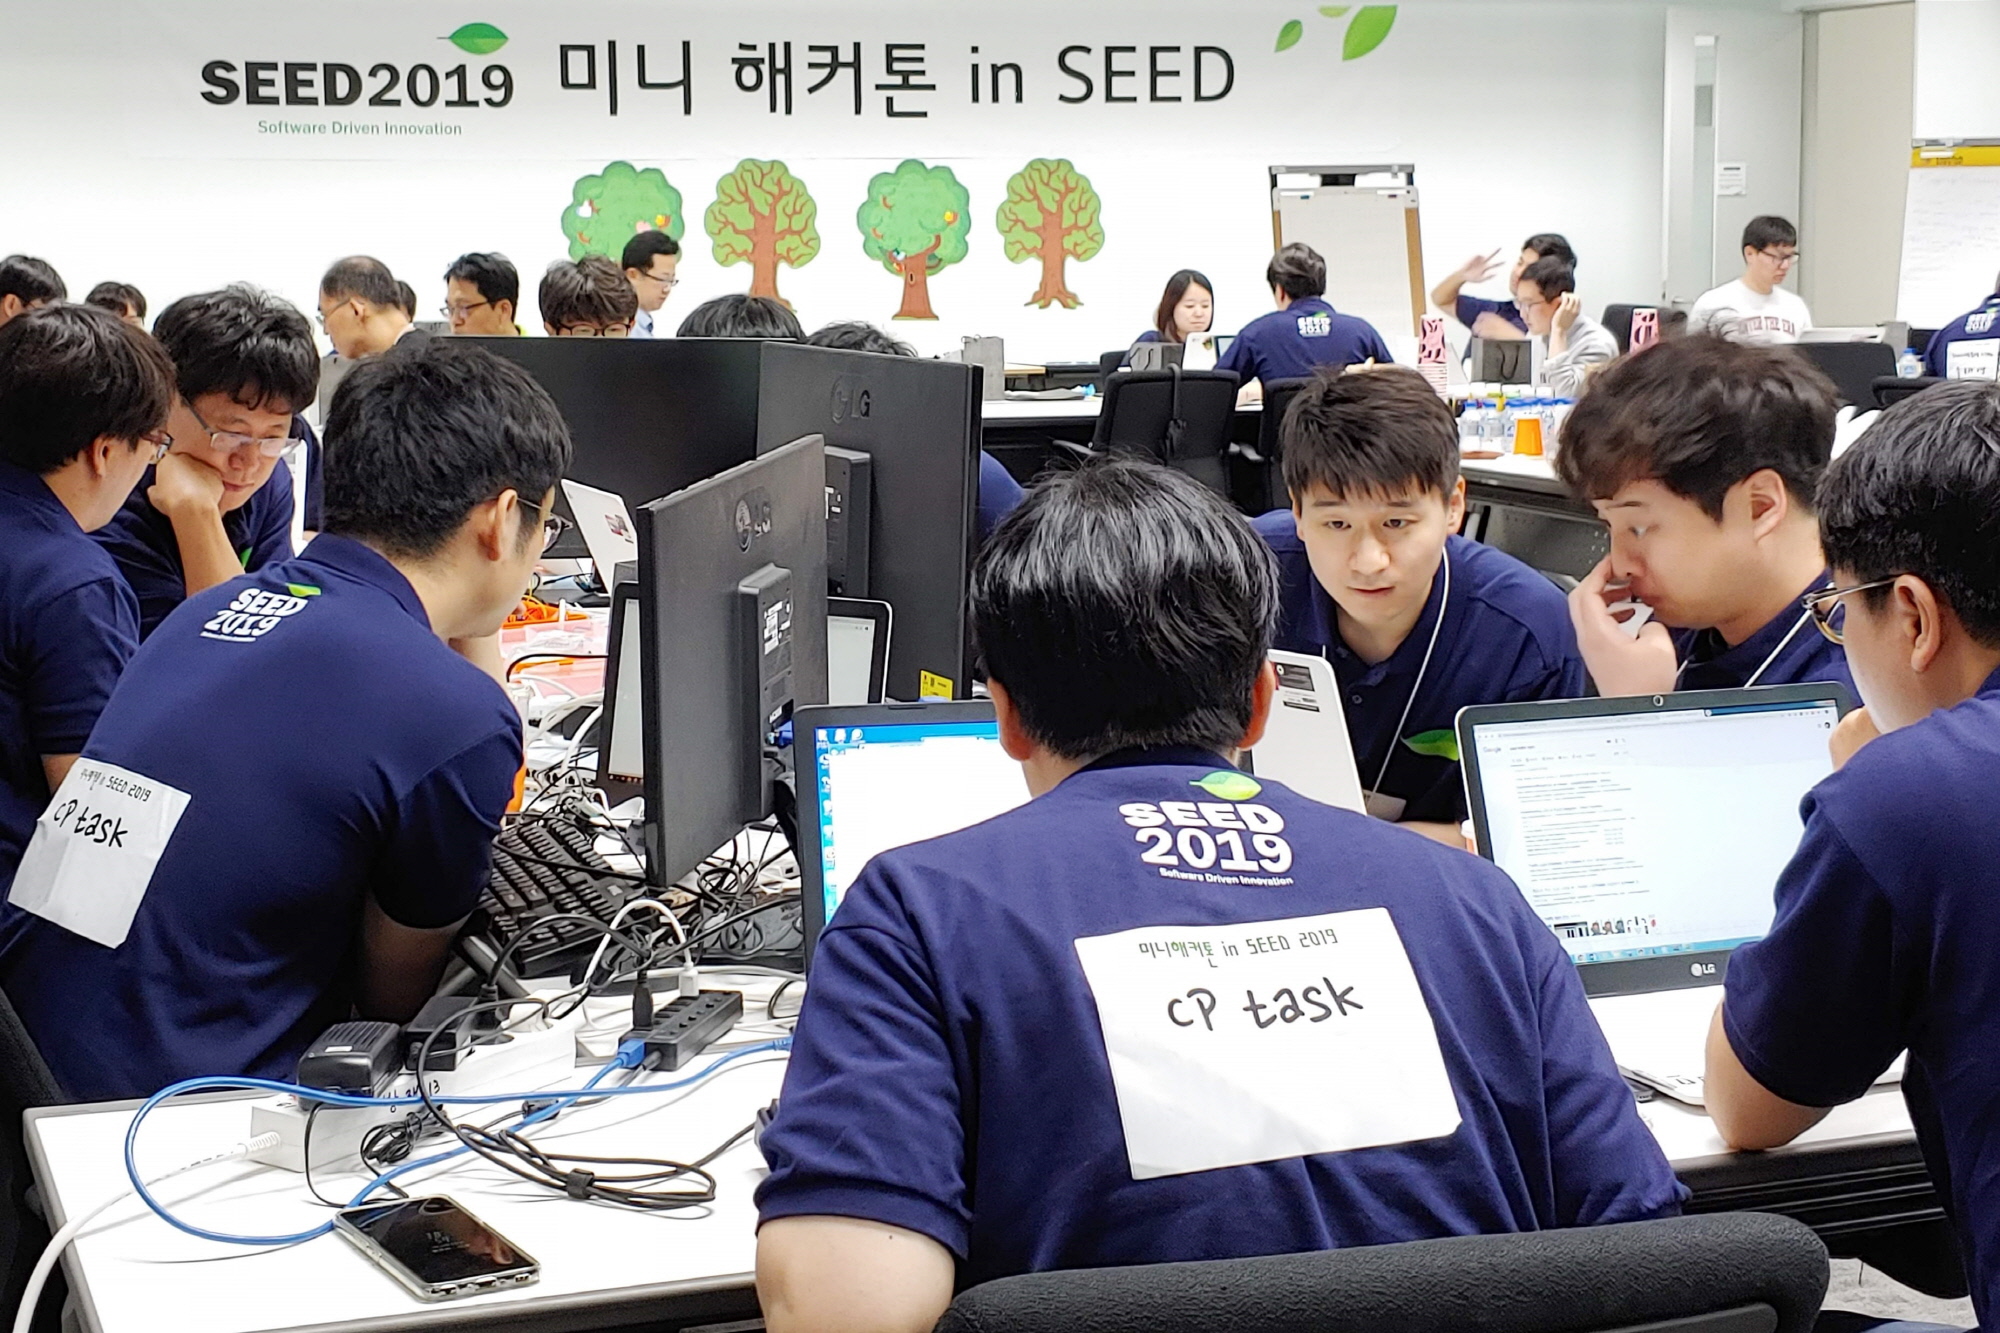 LG전자가 25일 서울 서초구 양재동에 위치한 서초R&D캠퍼스에서 ‘소프트웨어 개발자의 날 2019’를 개최했다. 개발자들이 해커톤에 참여하고 있다.